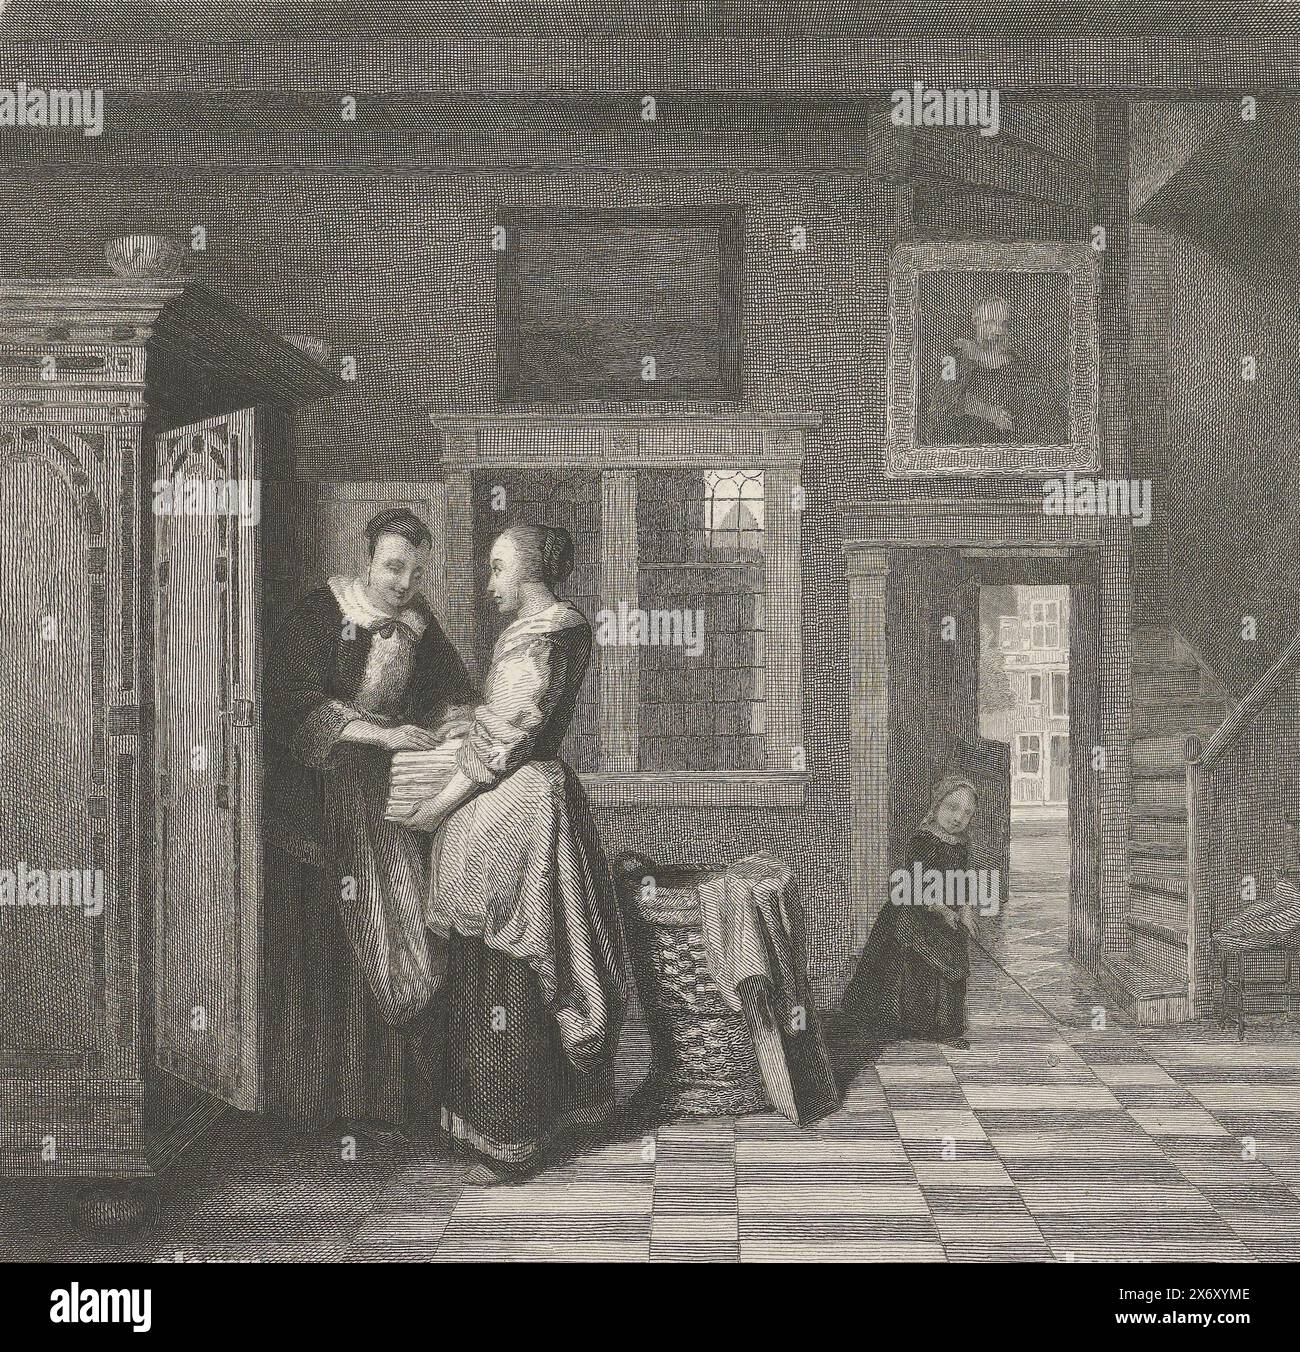 L'armadietto di lino, maestri olandesi (titolo della serie), interno con due donne davanti a un armadietto di lino aperto. All'ingresso un bambino gioca con un bastone e una palla. La stampa fa parte di una serie di 25 stampe ispirate ai maestri olandesi. Sopra l'immagine: PL IX, stampa, stampatore: Johann Wilhelm Kaiser (i), (menzionato sull'oggetto), dopo aver dipinto di: P. de Hooge, (menzionato sull'oggetto), 1823 - 1900, carta, incisione, altezza, 170 mm x larghezza, 217 mm Foto Stock